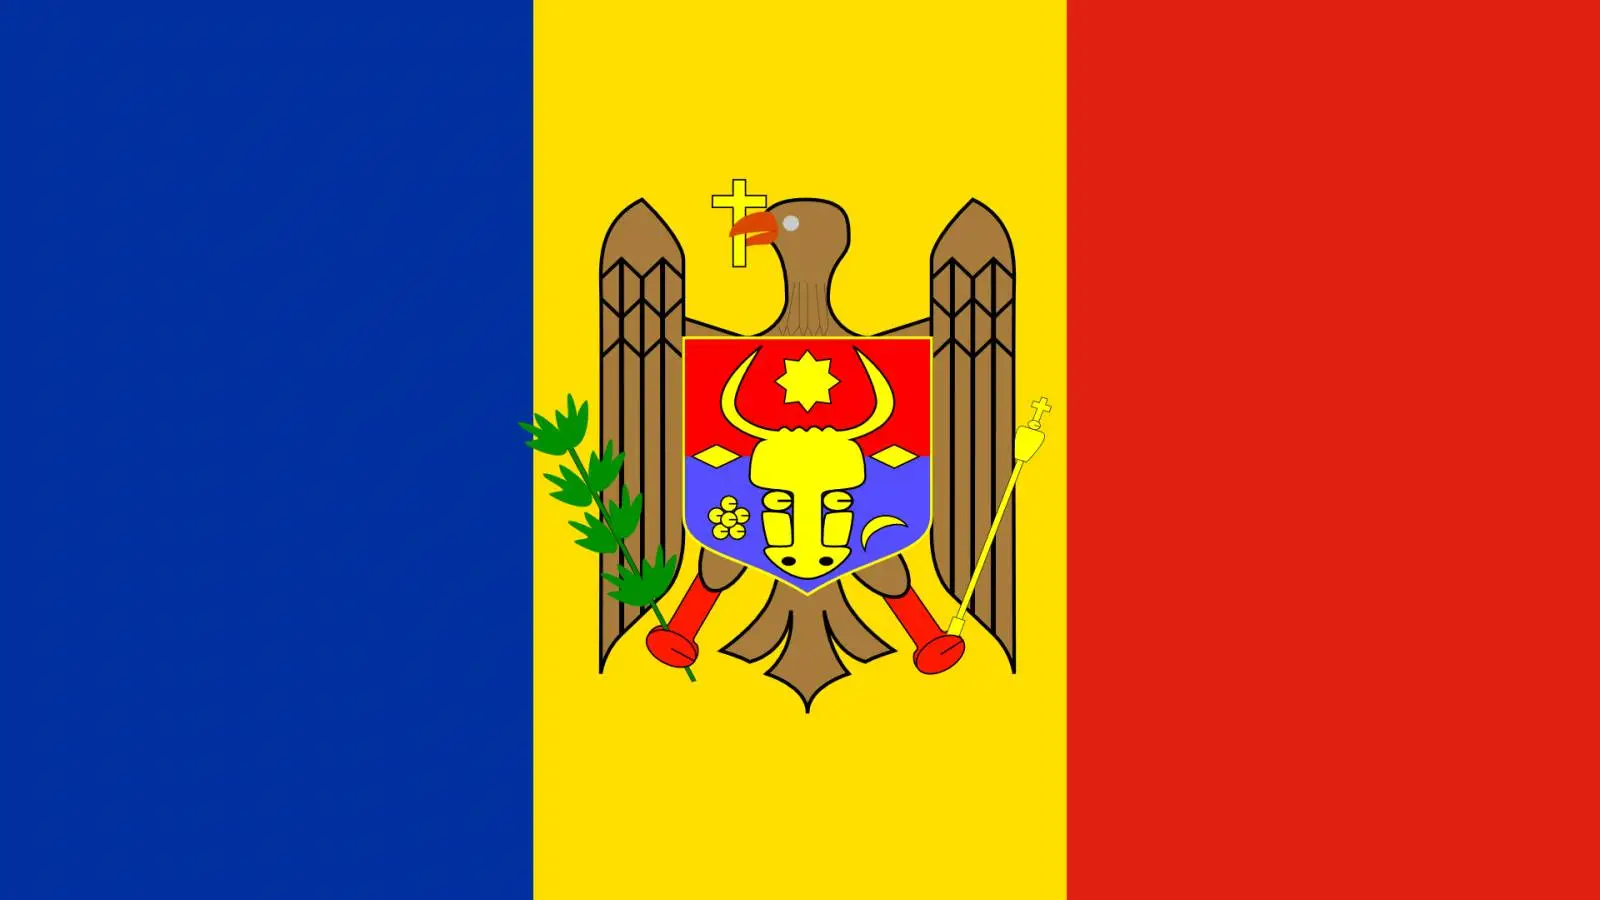 Forsvarsministeren fra Moldova siger, at Rusland ikke ønsker at angribe landet